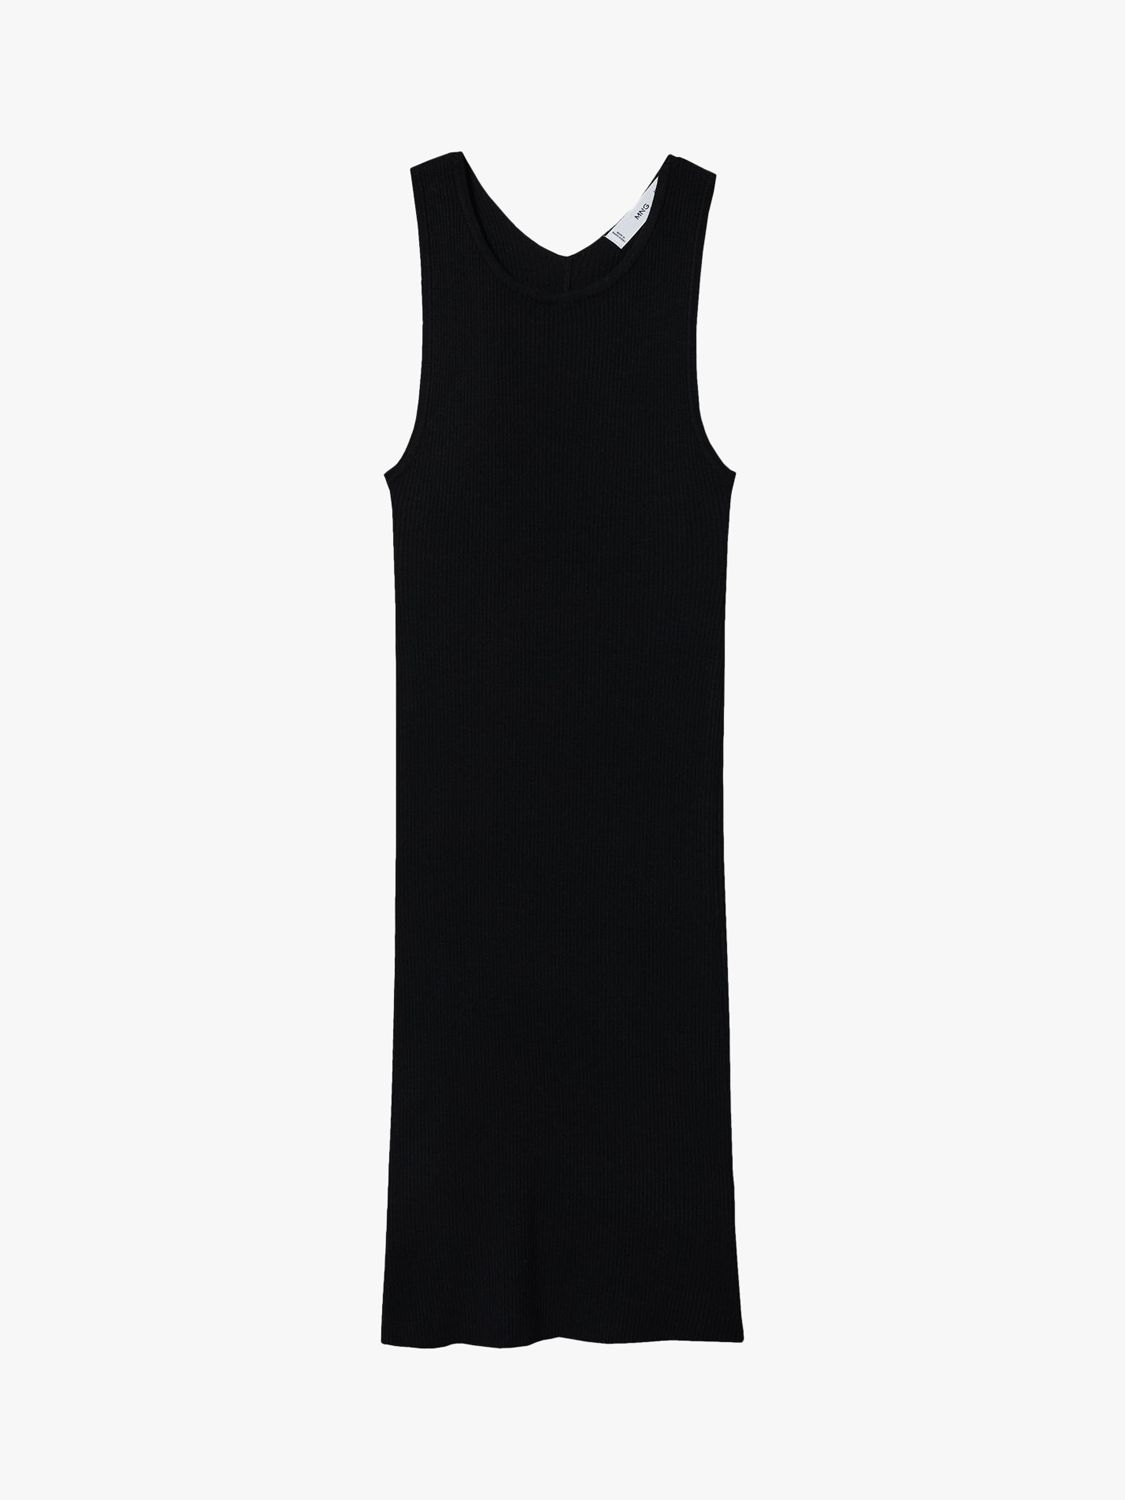 Mango Pasi Rib Knit Mini Dress, Black at John Lewis & Partners